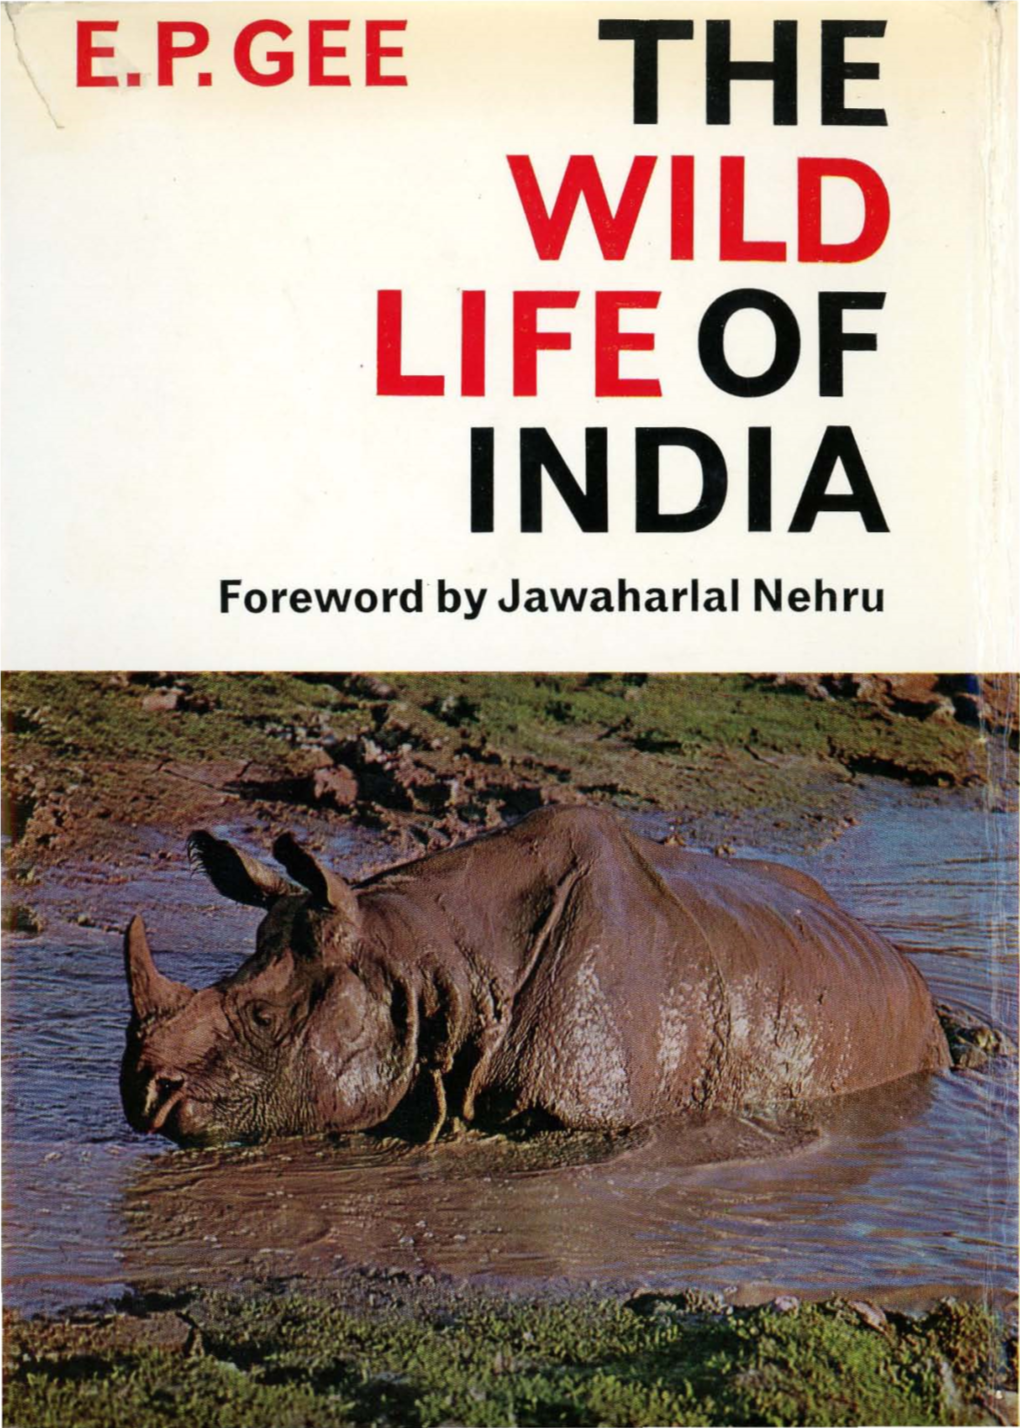 THE . WILD LIFE of INDIA Foreword by Jawaharlal Nehru 19 the Rhino of Kaziranga